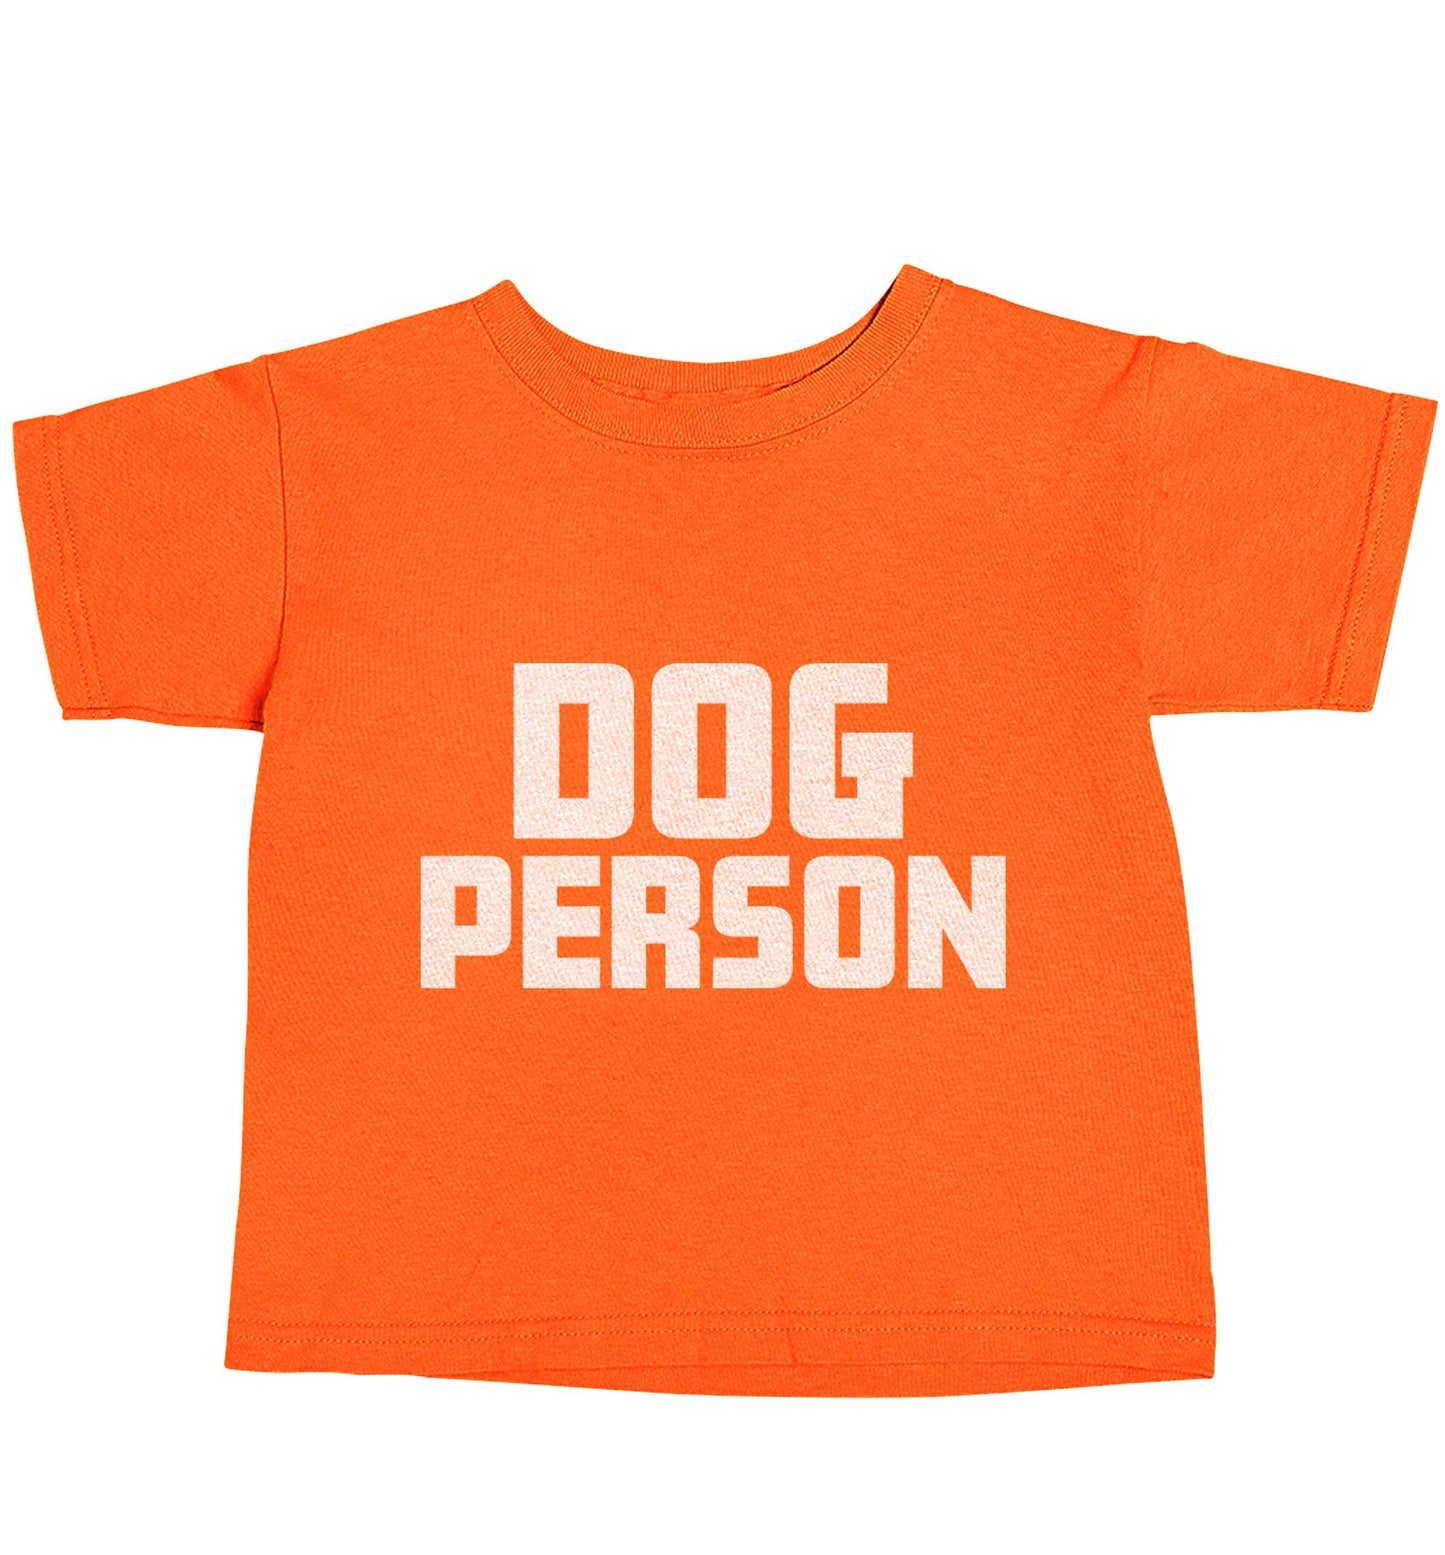 Dog Person Kit orange baby toddler Tshirt 2 Years